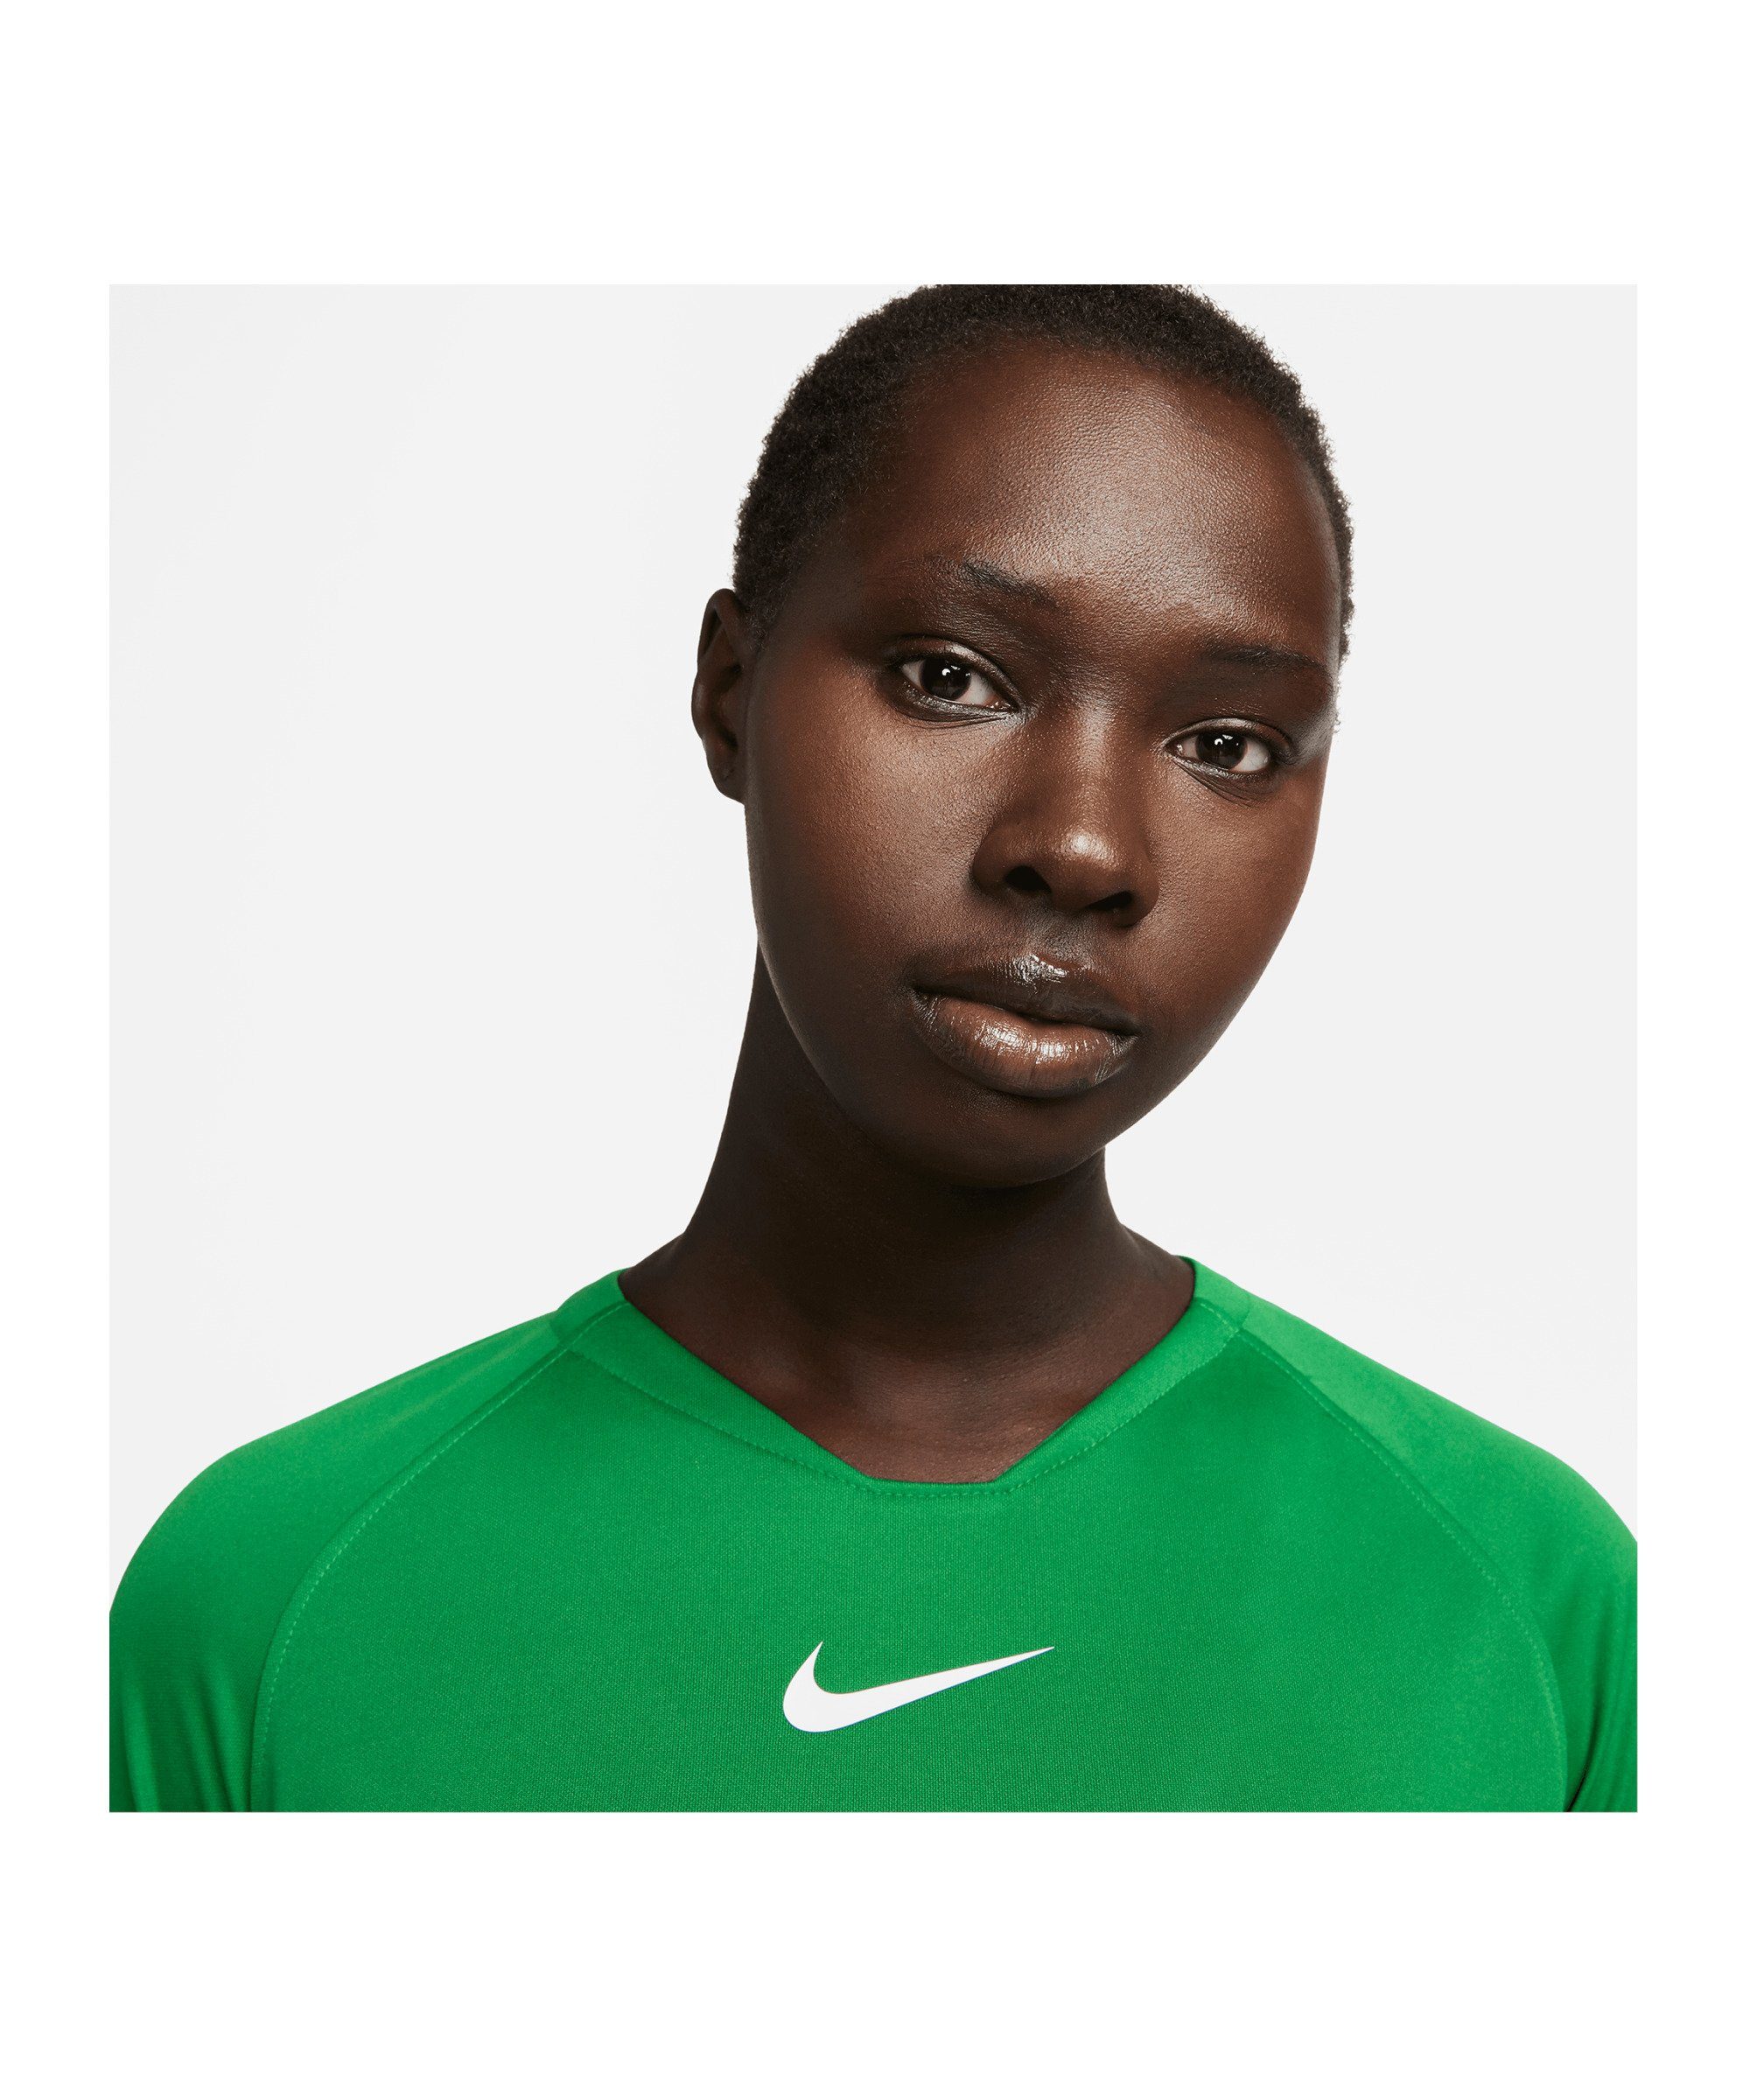 First Funktionsshirt Nike Damen gruenweiss Park default Layer